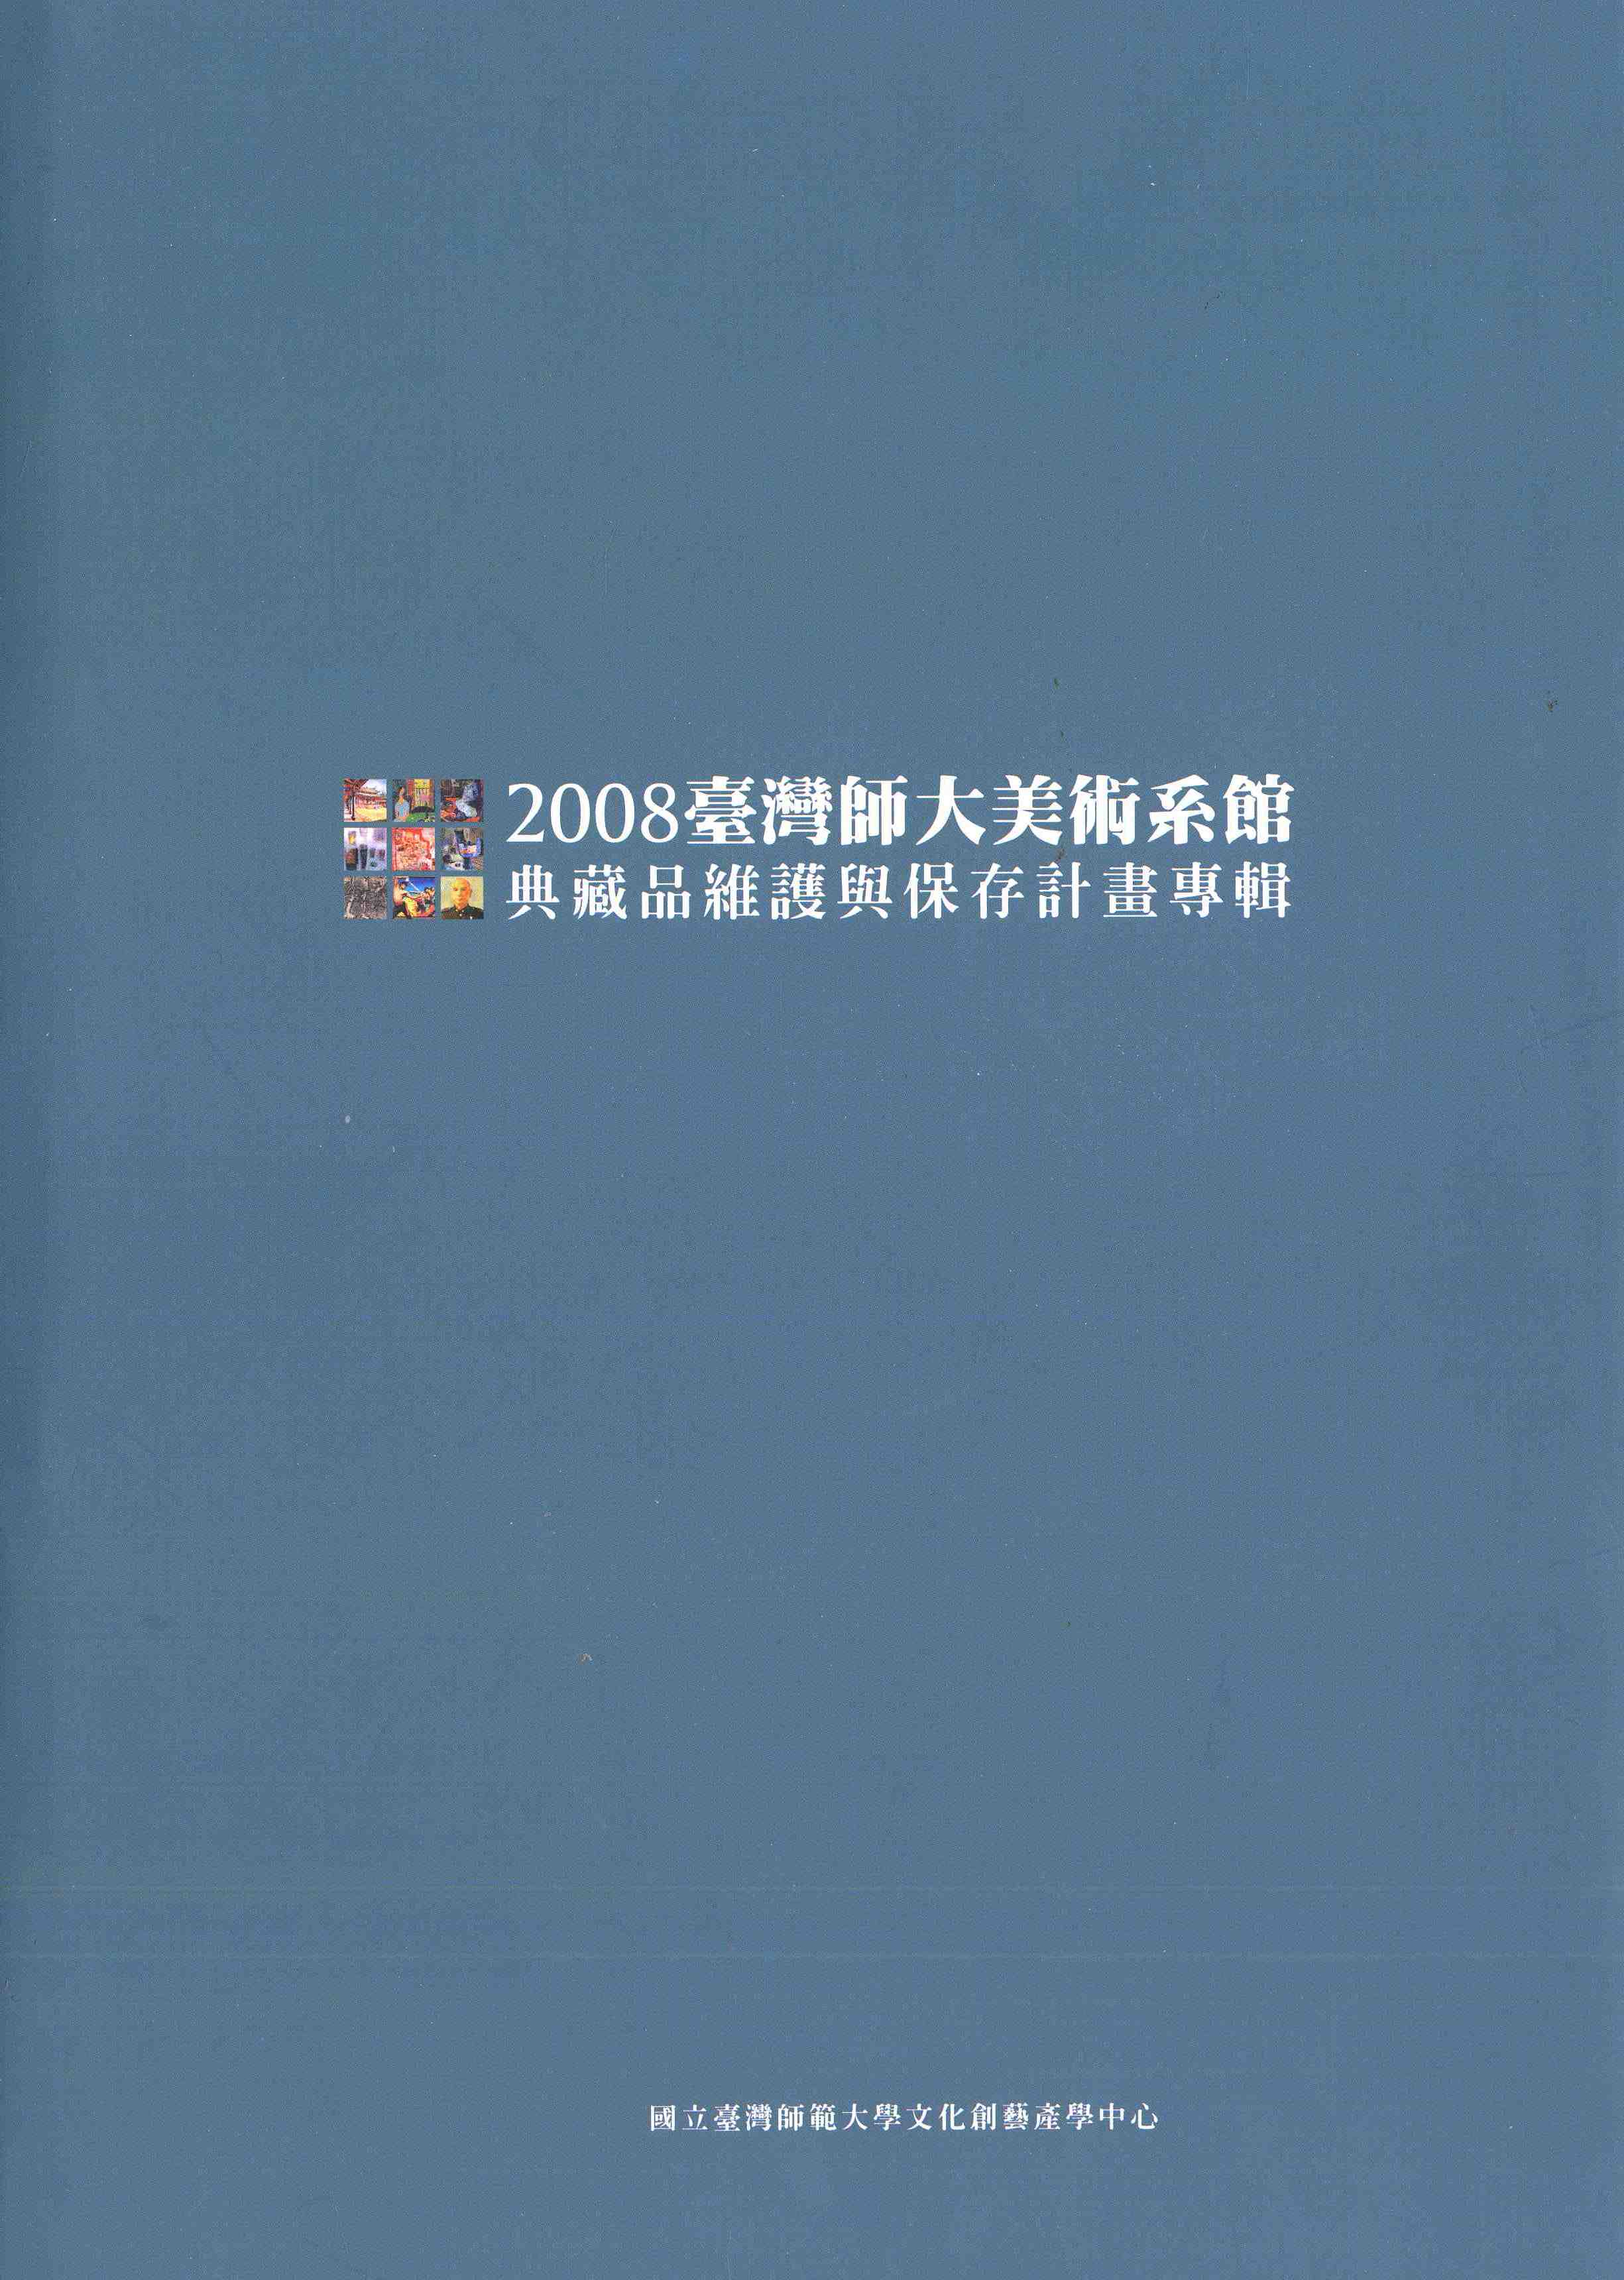 2008臺灣師大美術系館典藏品維護與保存計畫專輯